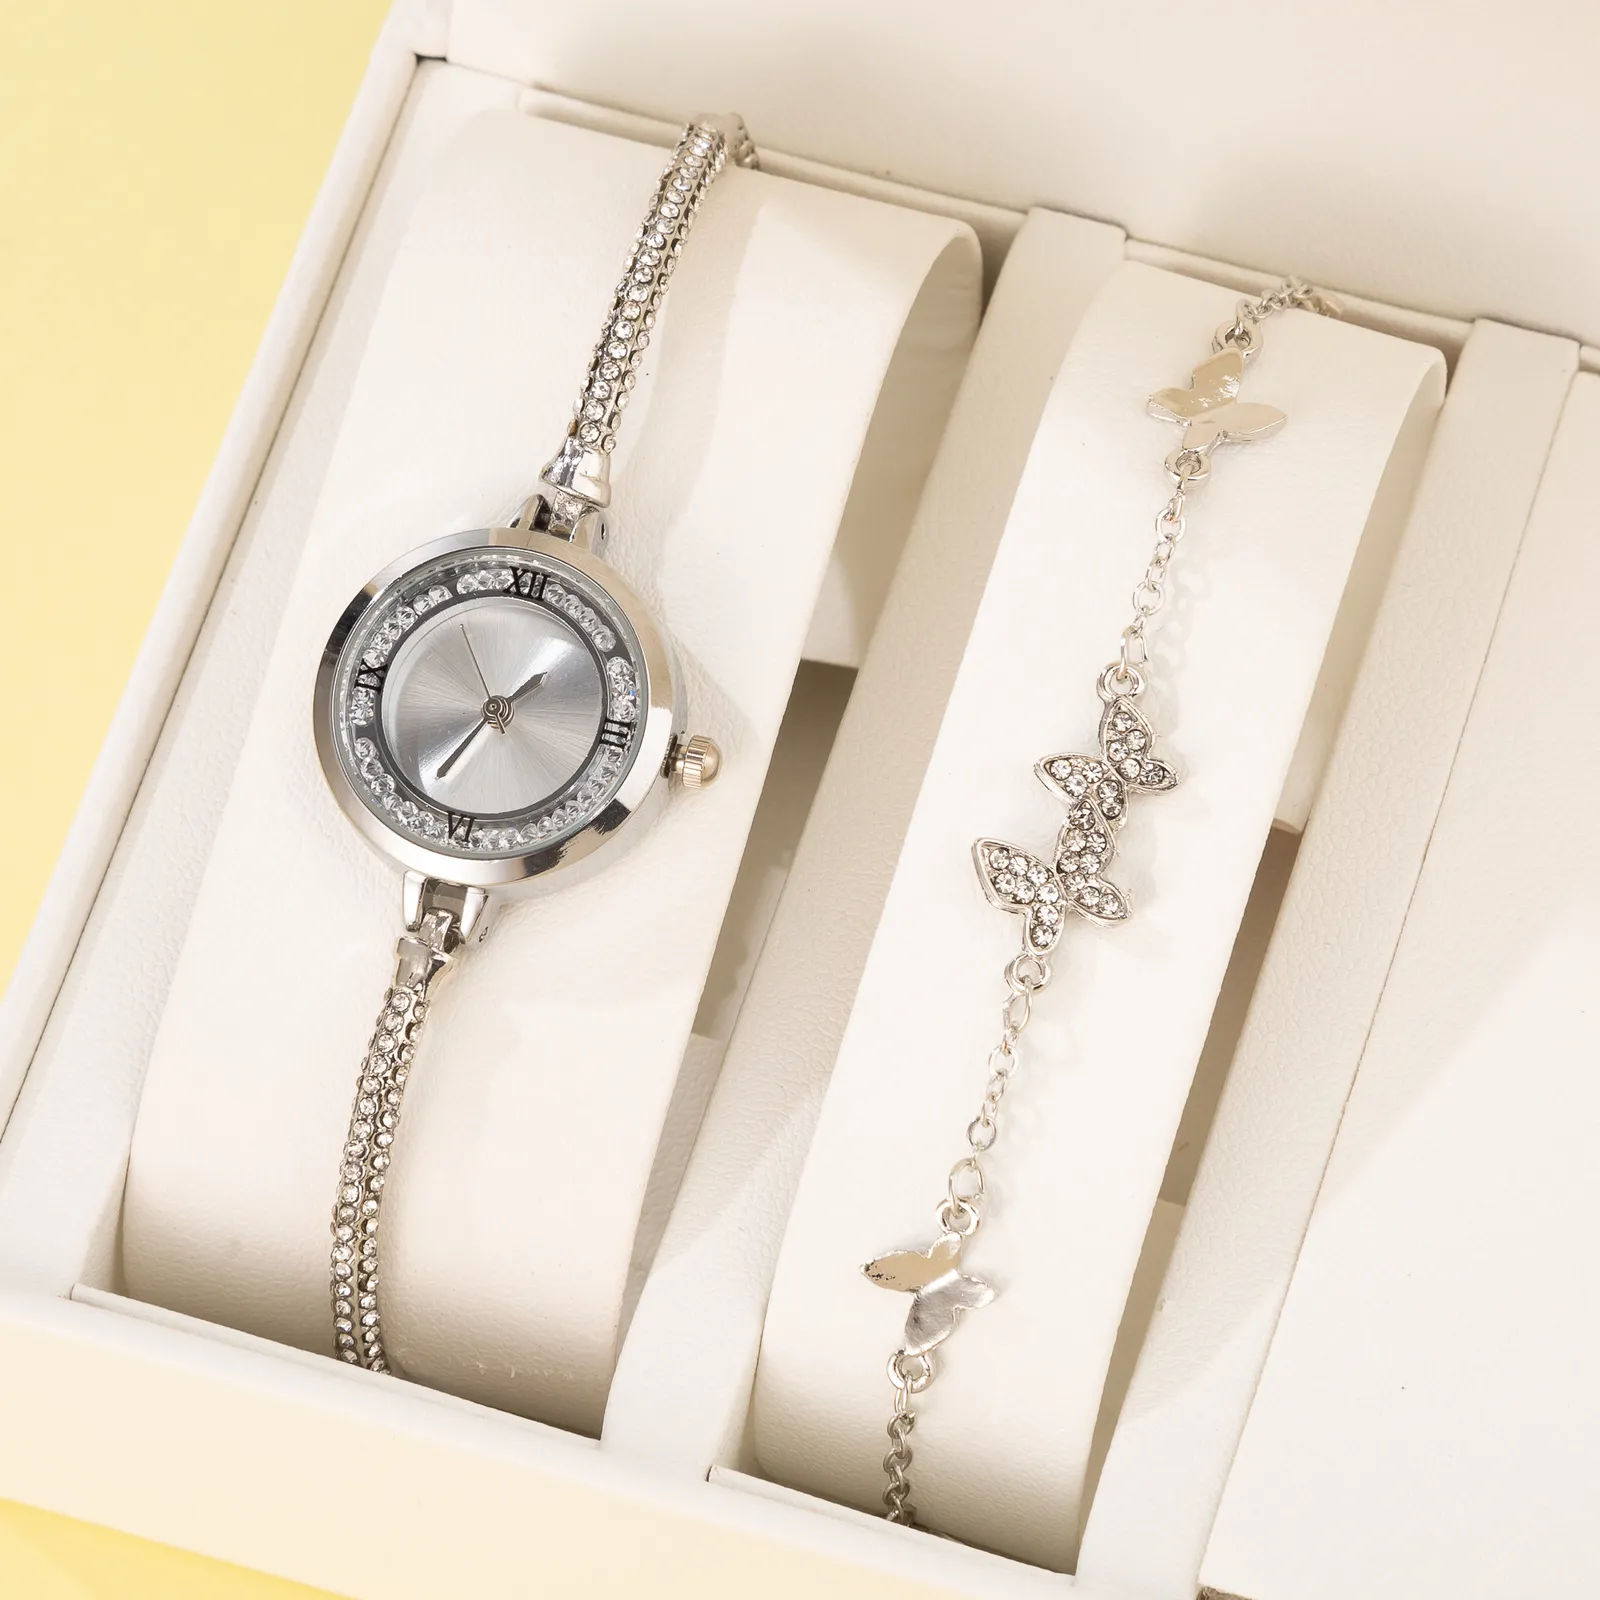 Другие часы 2pcs set reloj mujer бренд роскошный браслет для часов, женские женские модные первые часы для подарка 230809